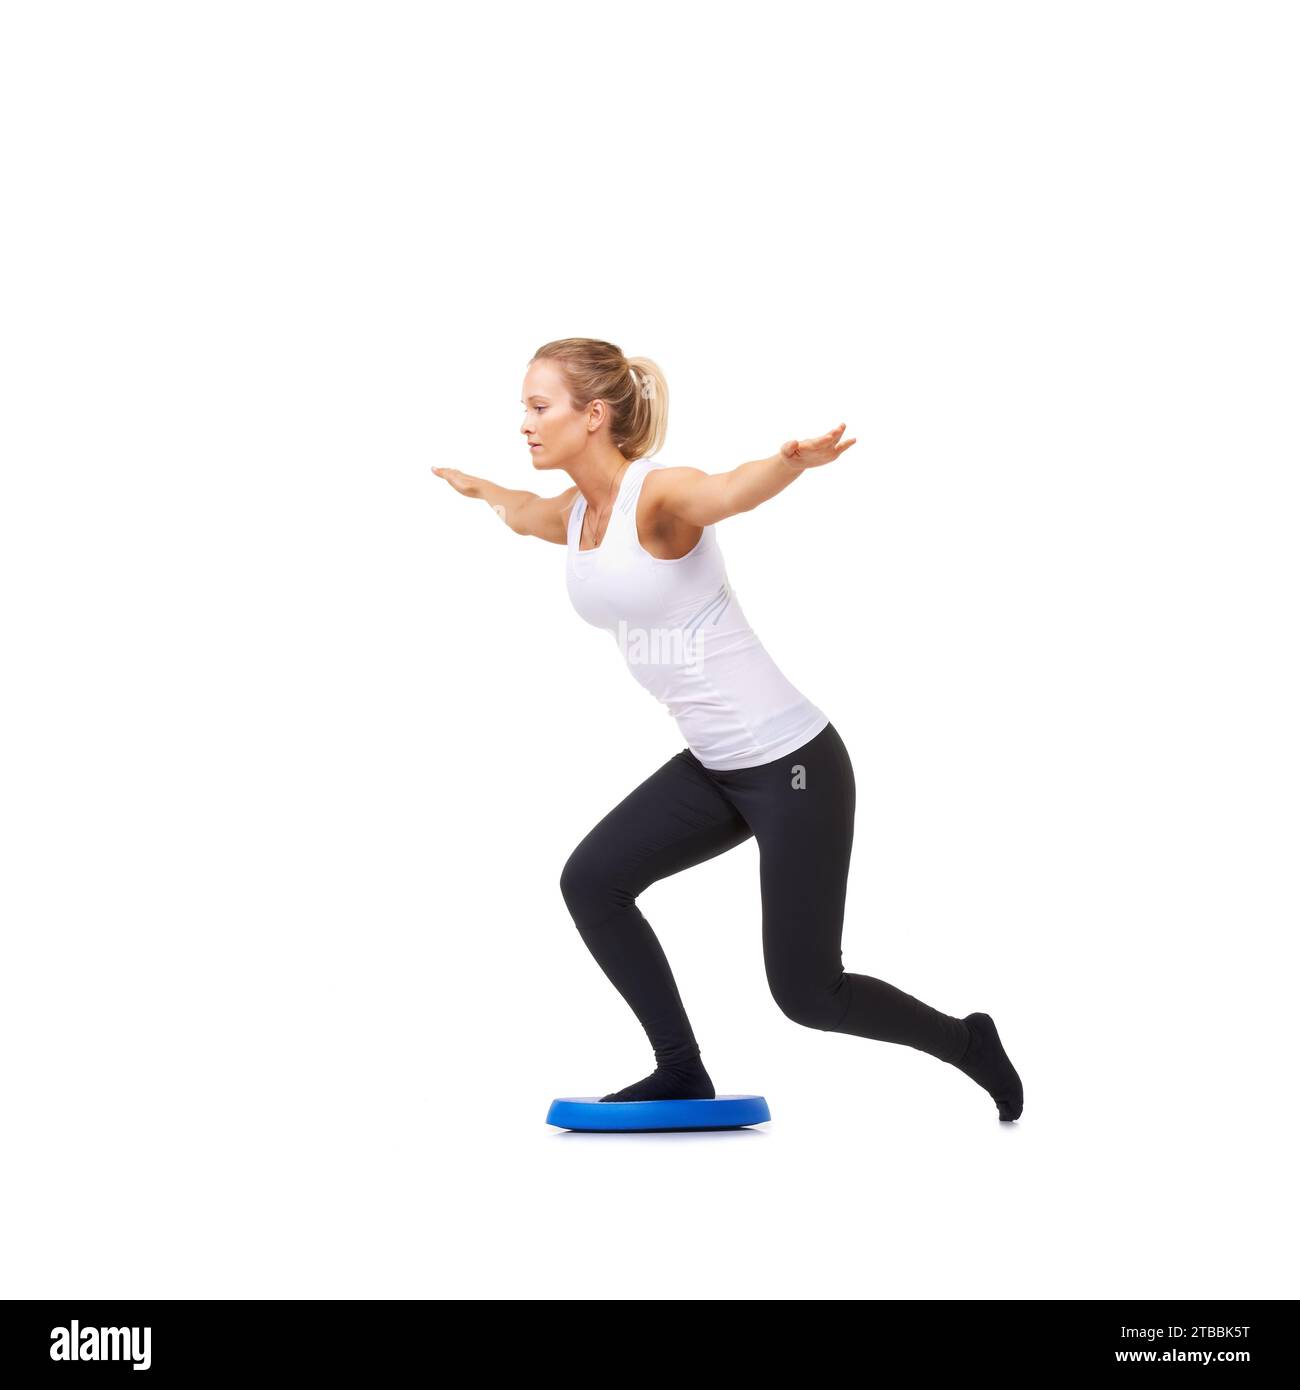 Balance, Gesundheit und Training mit Frau auf Diskette im Studio für Workout, Körper oder Bewegung. Wellness, Herausforderung und Fitness mit weiblicher Person auf weiß Stockfoto